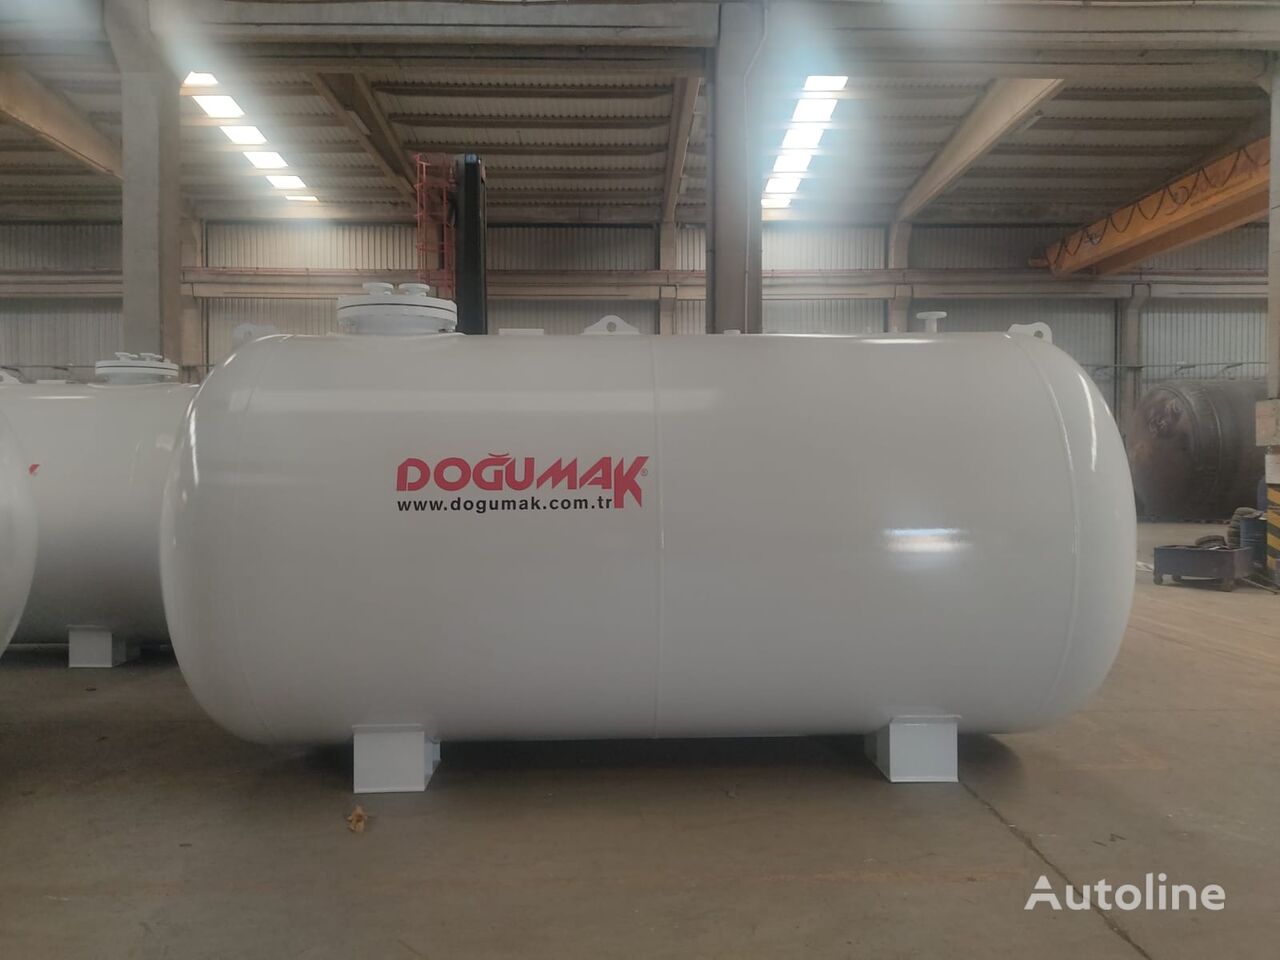 nova cisterna za plin Doğumak 2 of PCS 10 MT (20) M3 LPG STORAGE TANK FITTING INTO 40' CONTAIN